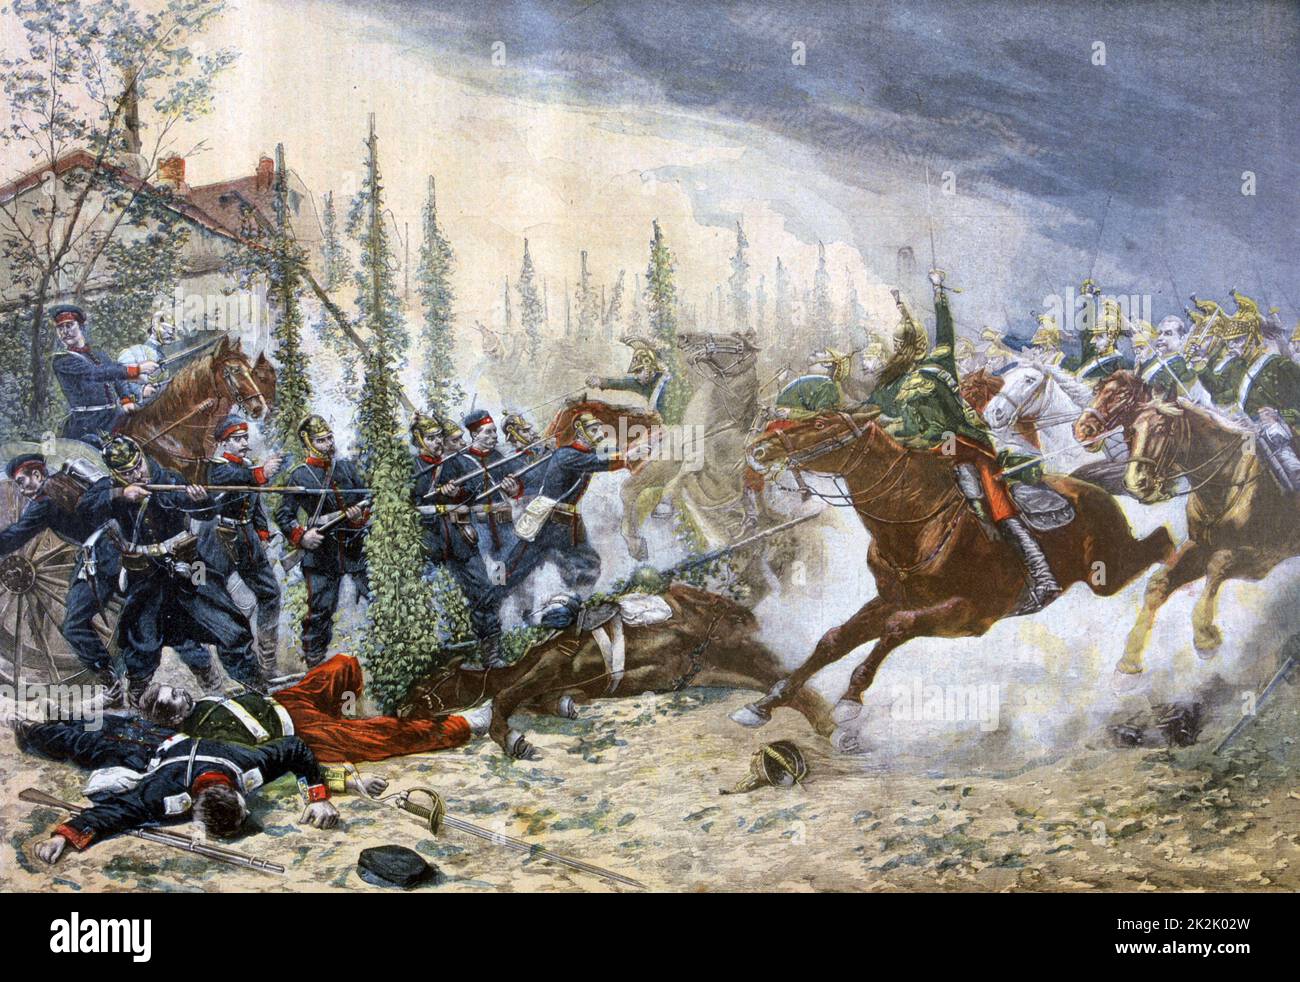 Guerre franco-prussienne 1870-1871, bataille de Gravelotte, 18 août 1870 : cavalerie légère prussienne chargeant un canon de campagne français. Prussiens victorieux. De 'le petit Journal', Paris, 7 mai 1894. Banque D'Images